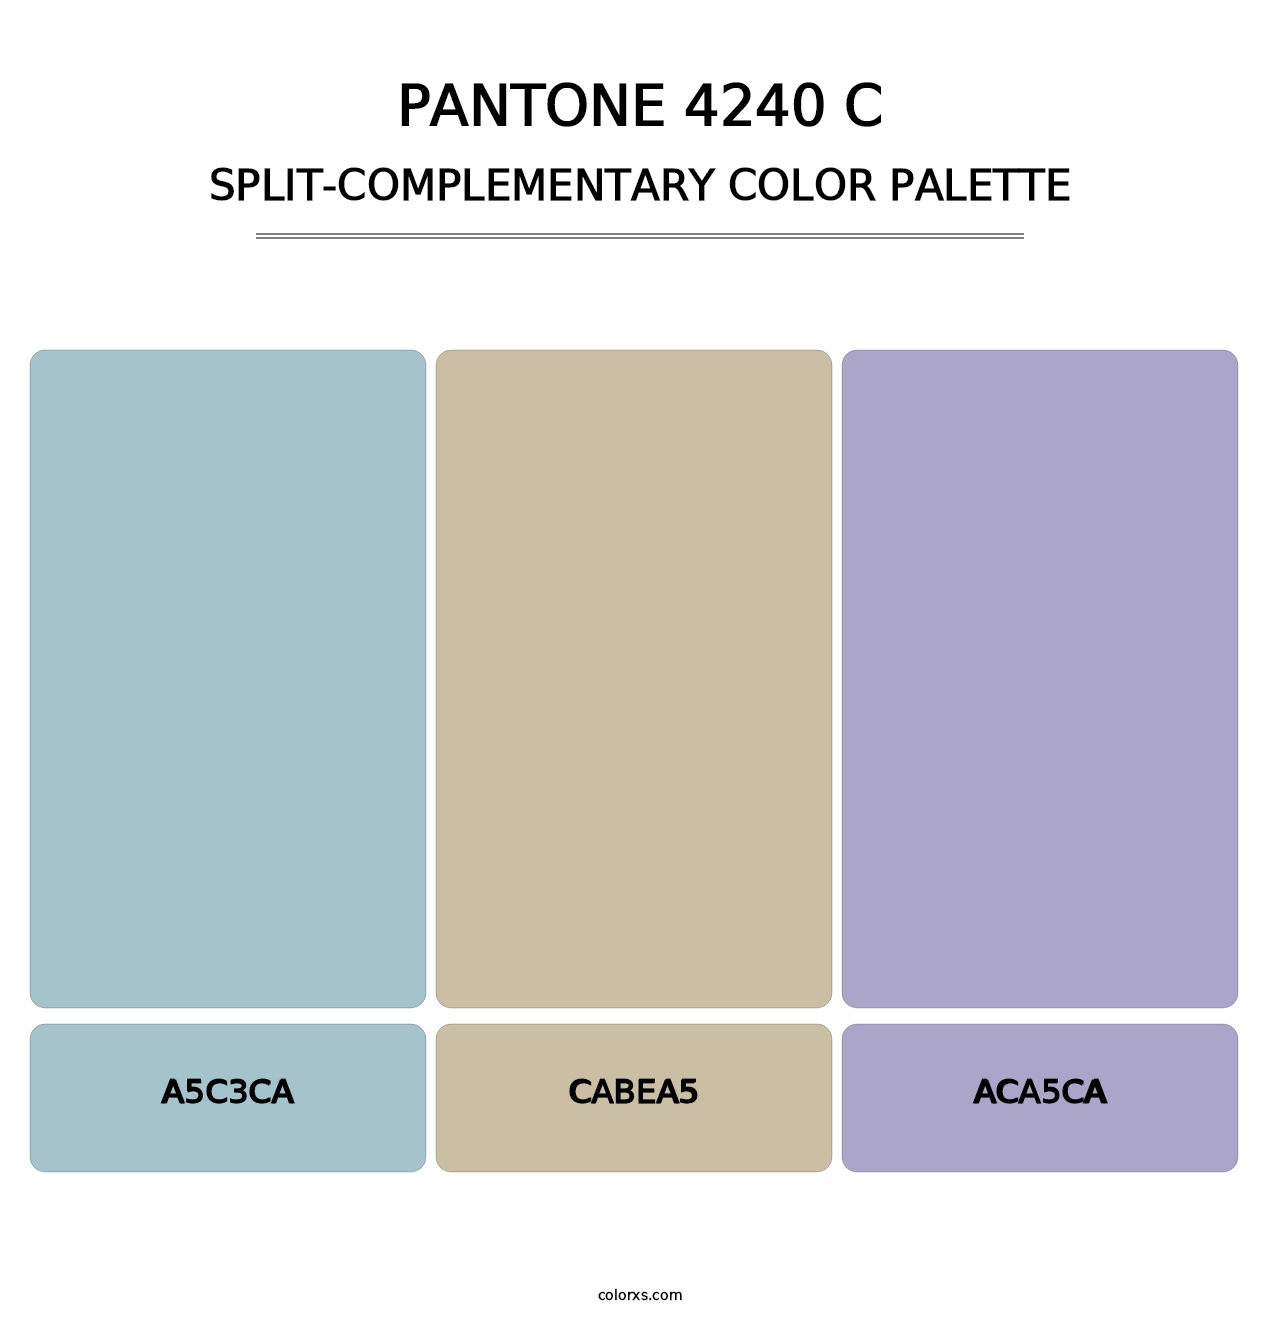 PANTONE 4240 C - Split-Complementary Color Palette